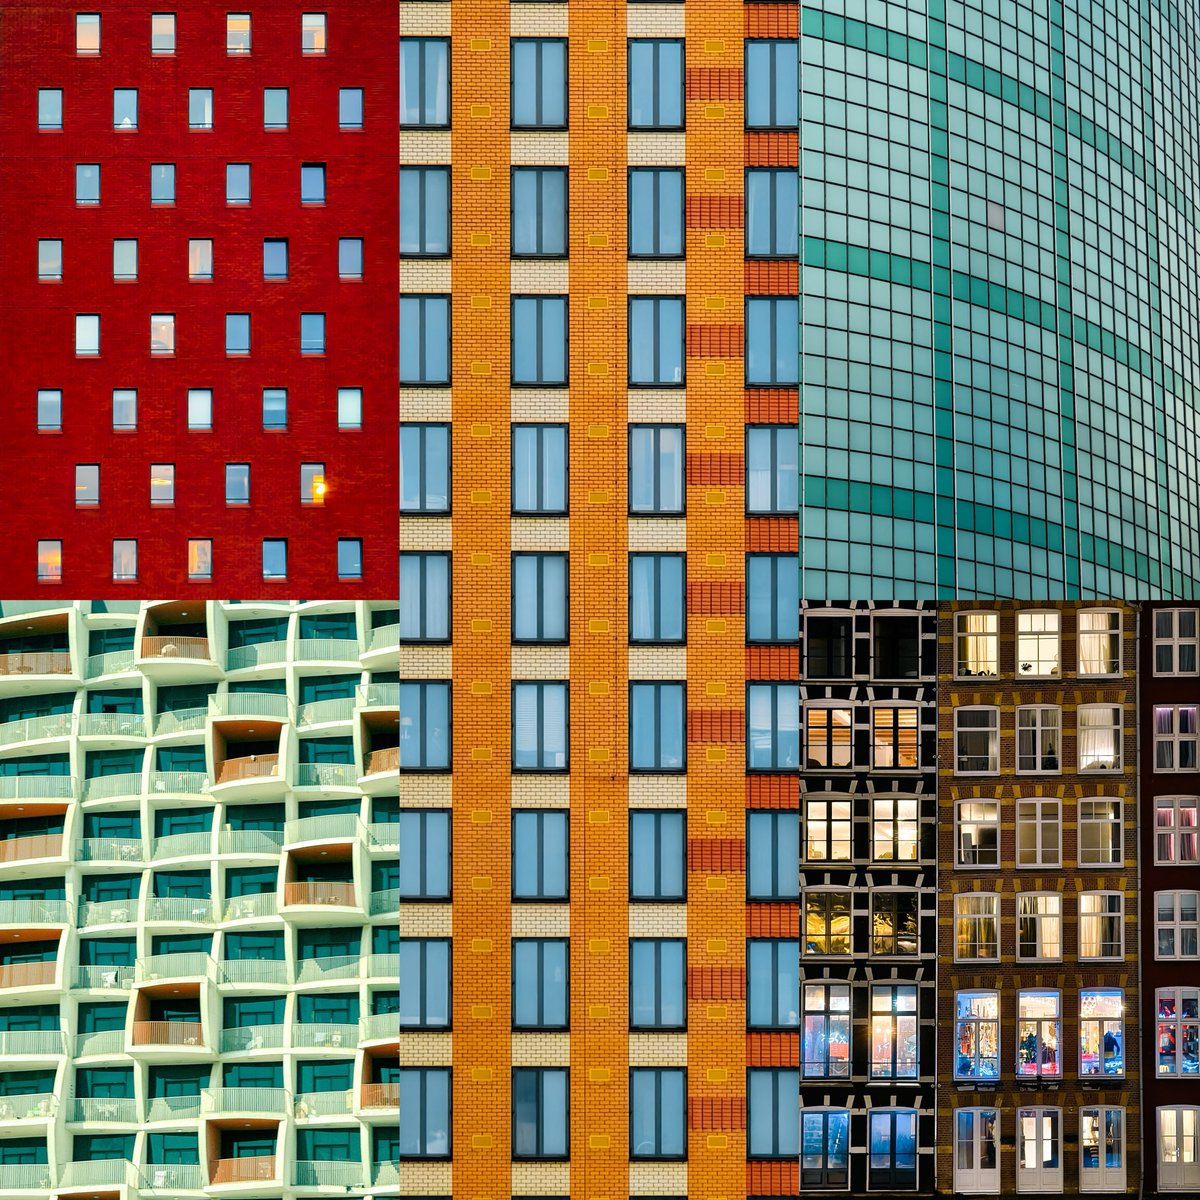 Portraits of buildings that I shot